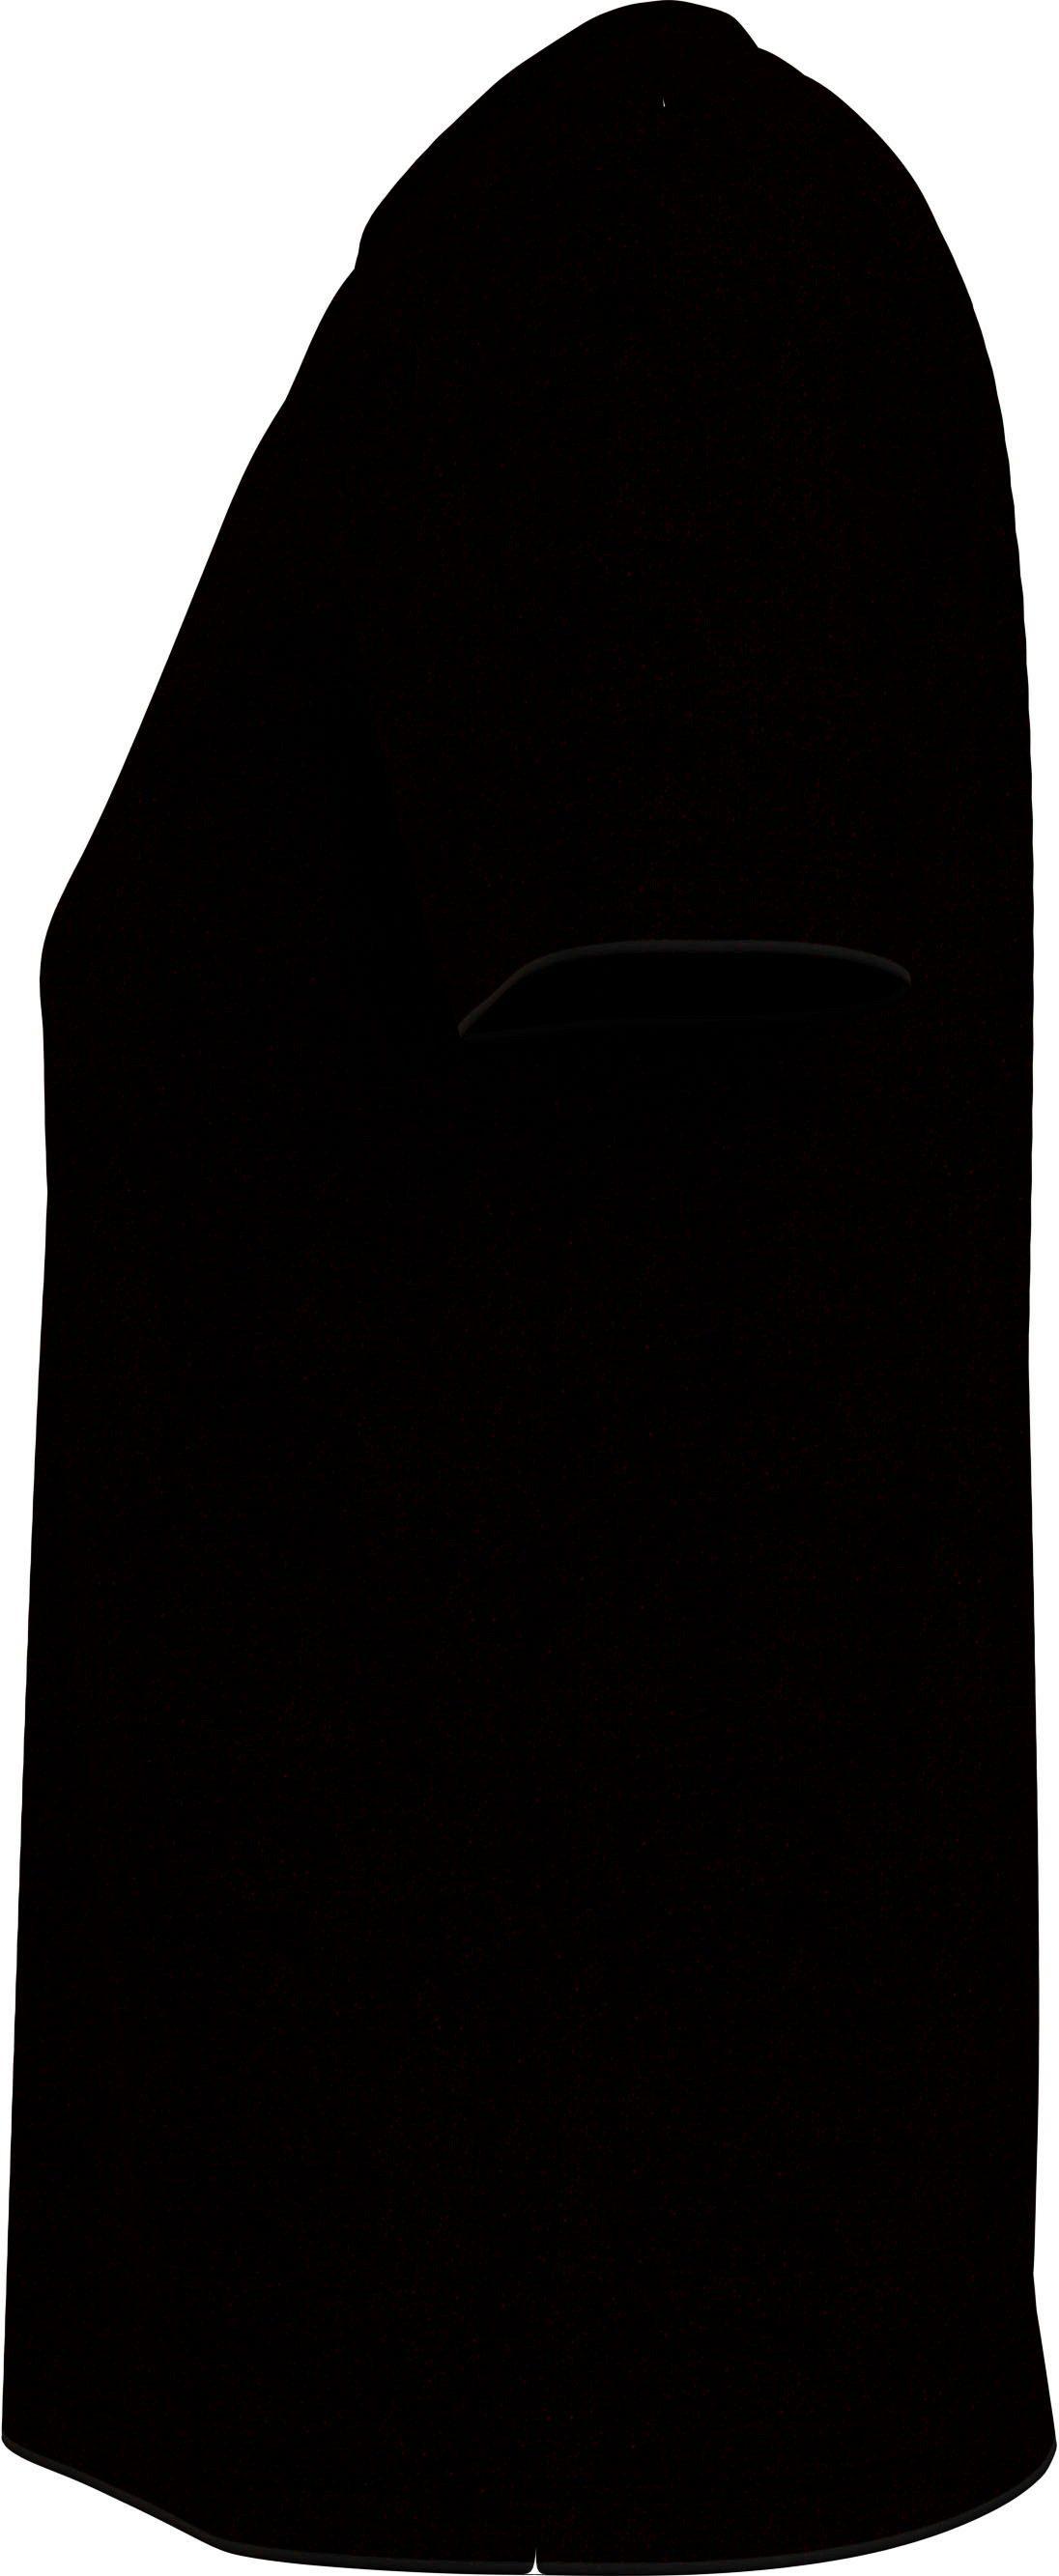 mit Ck dezentem T-Shirt Calvin Black Jeans Logodruck TEE LOGO Calvin MODERN Klein STACKED STRAIGHT Jeans Klein